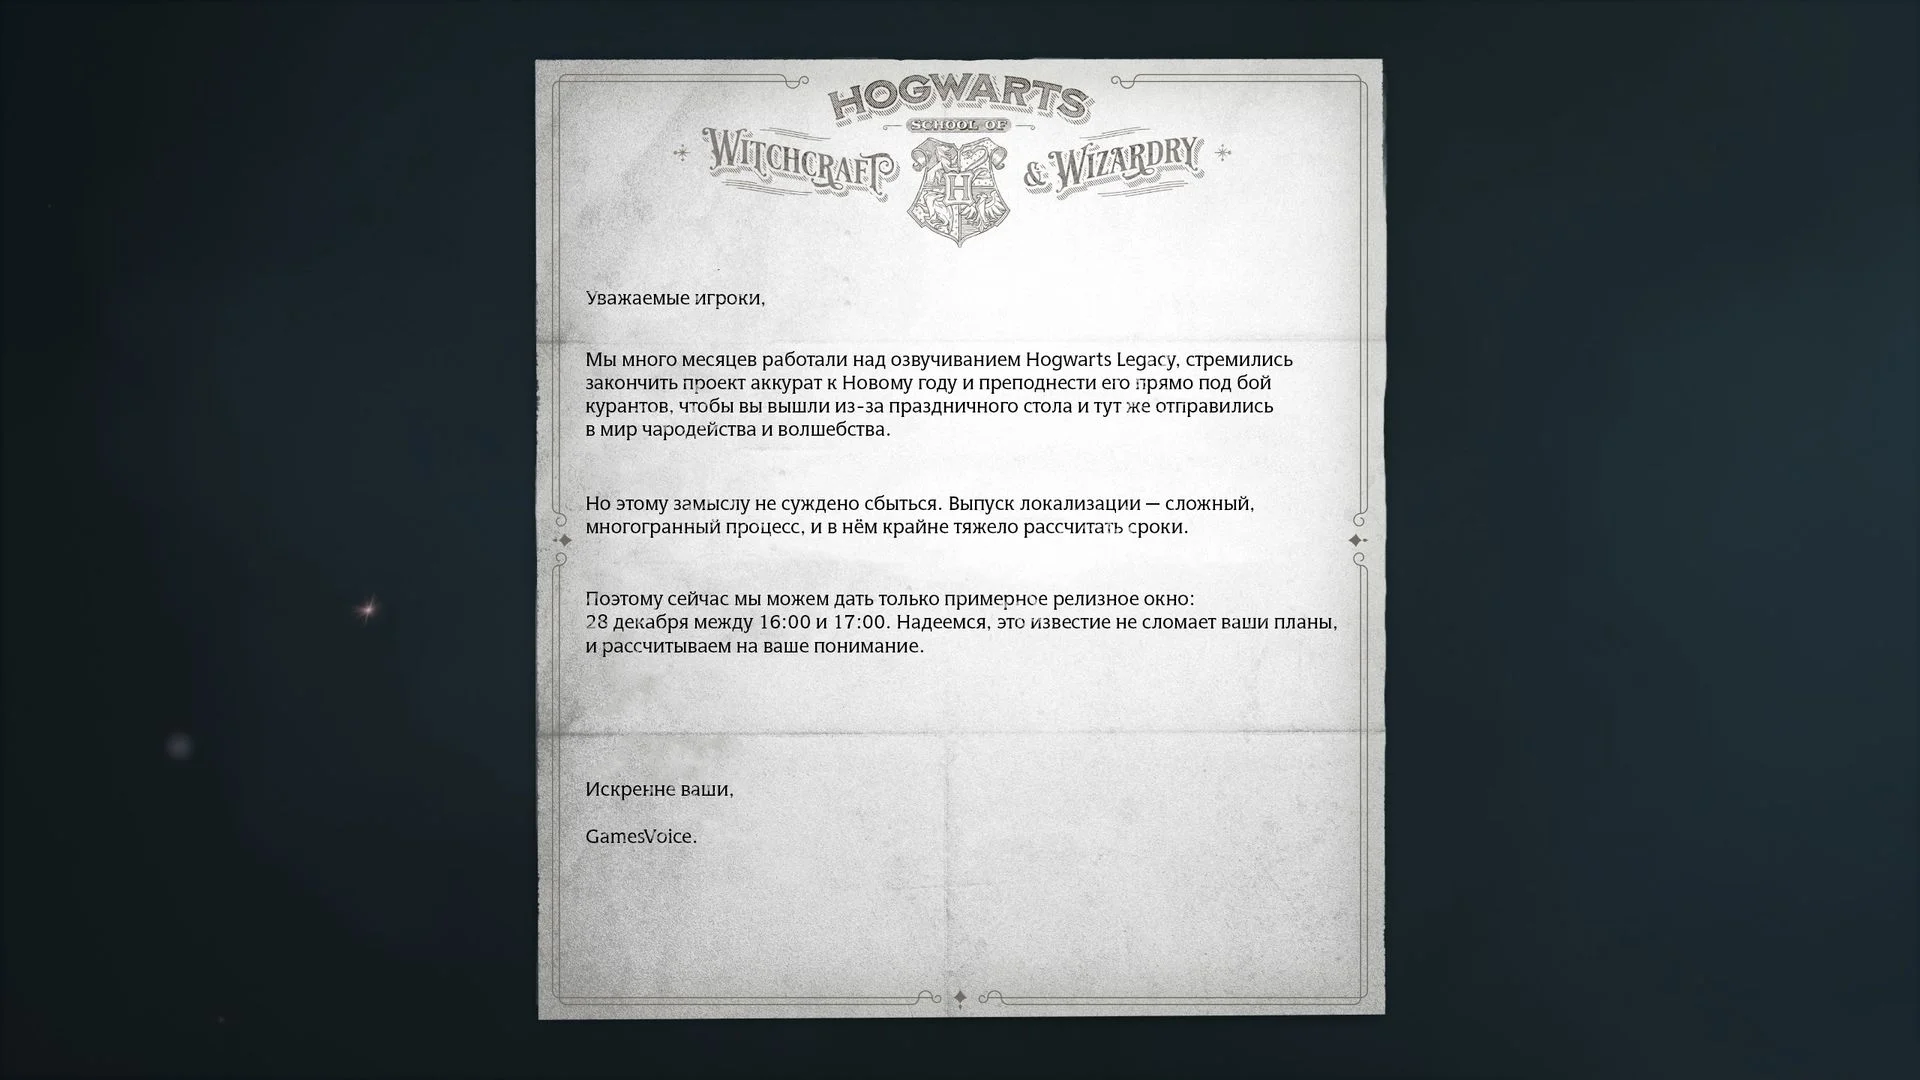 Русская локализация Hogwarts Legacy от GamesVoice выйдет 28 декабря - фото 1